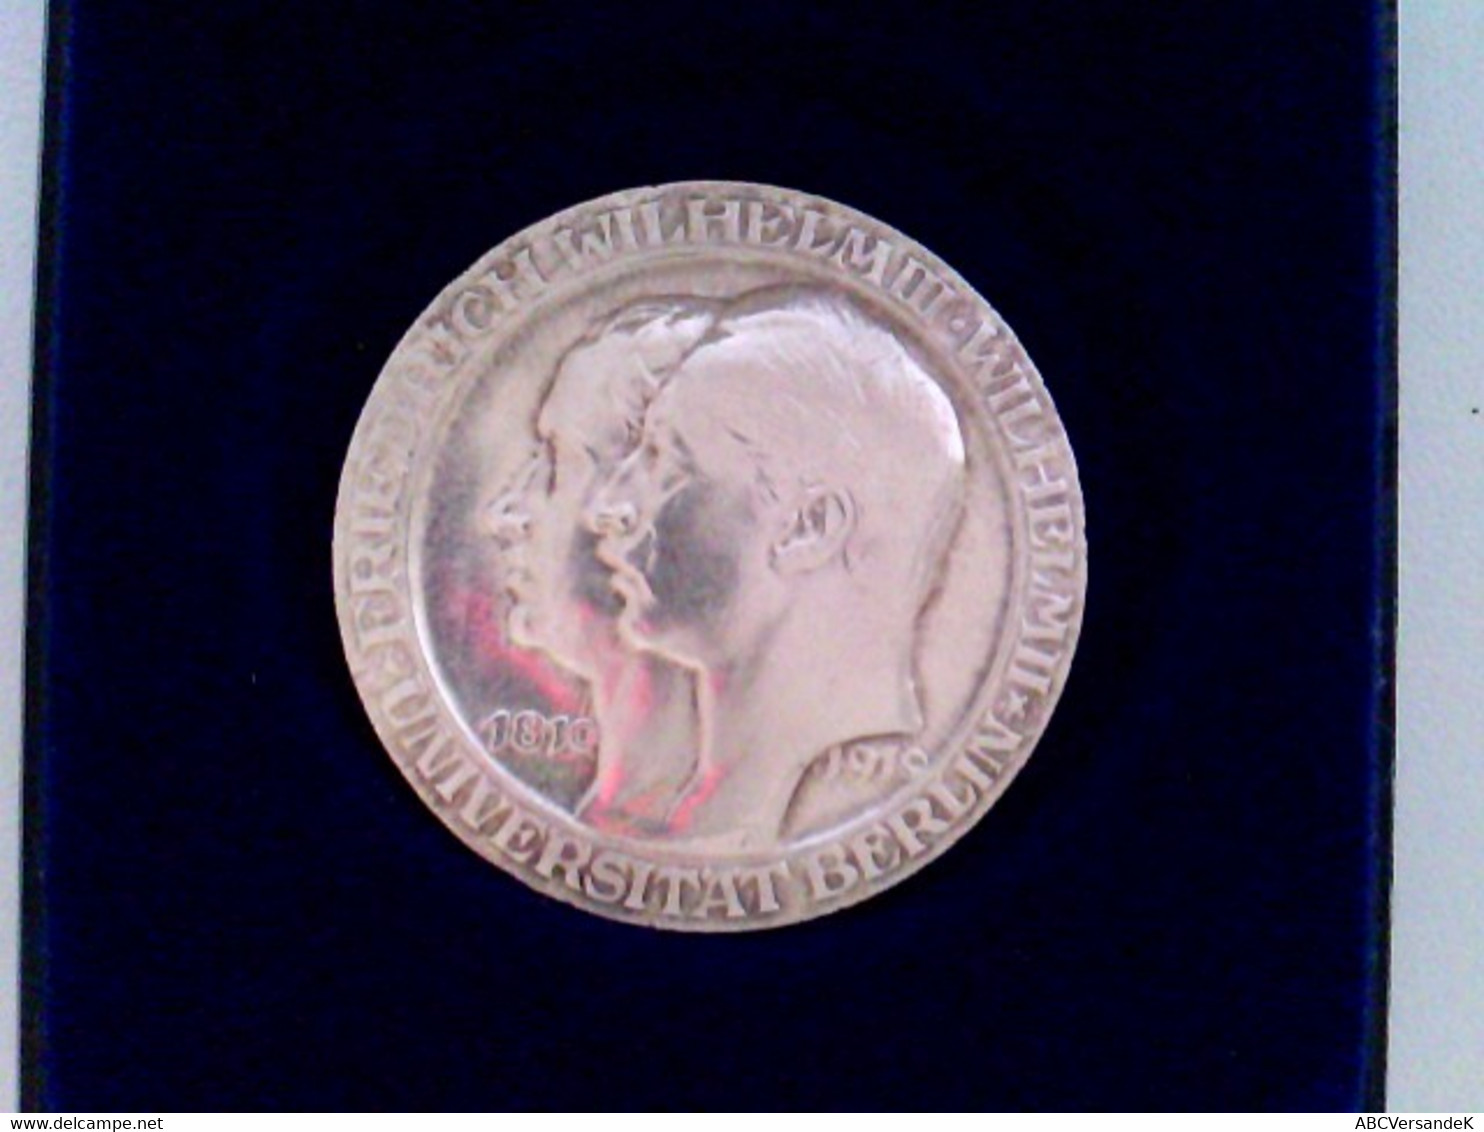 Münze: Drei Mark Deutsches Reich 1910, Friedrich Wilhelm III 3 Und Wilhelm II 2 Universität Berlin, 1810 - 191 - Numismatiek